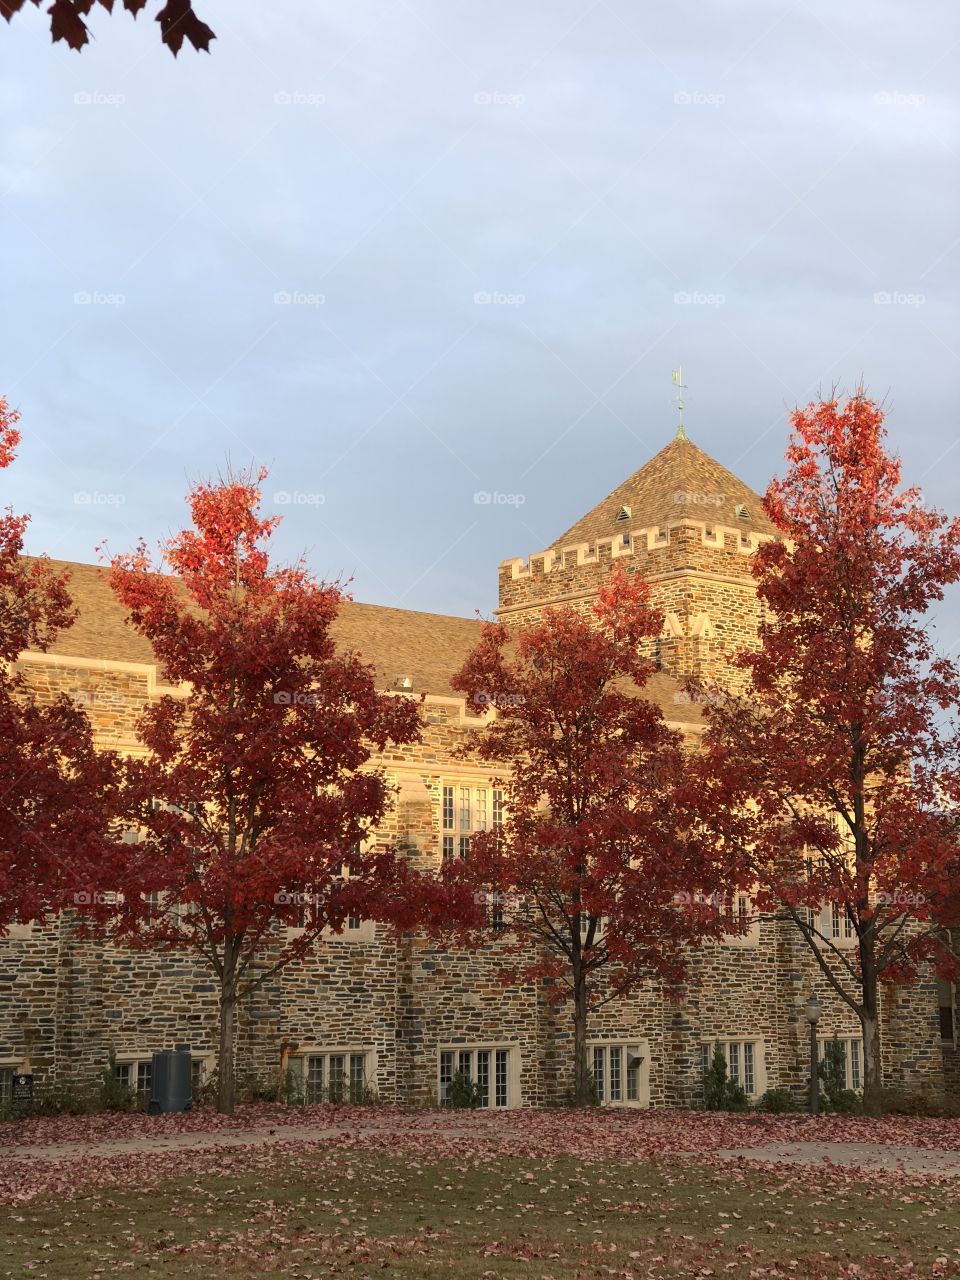 Duke Campus 